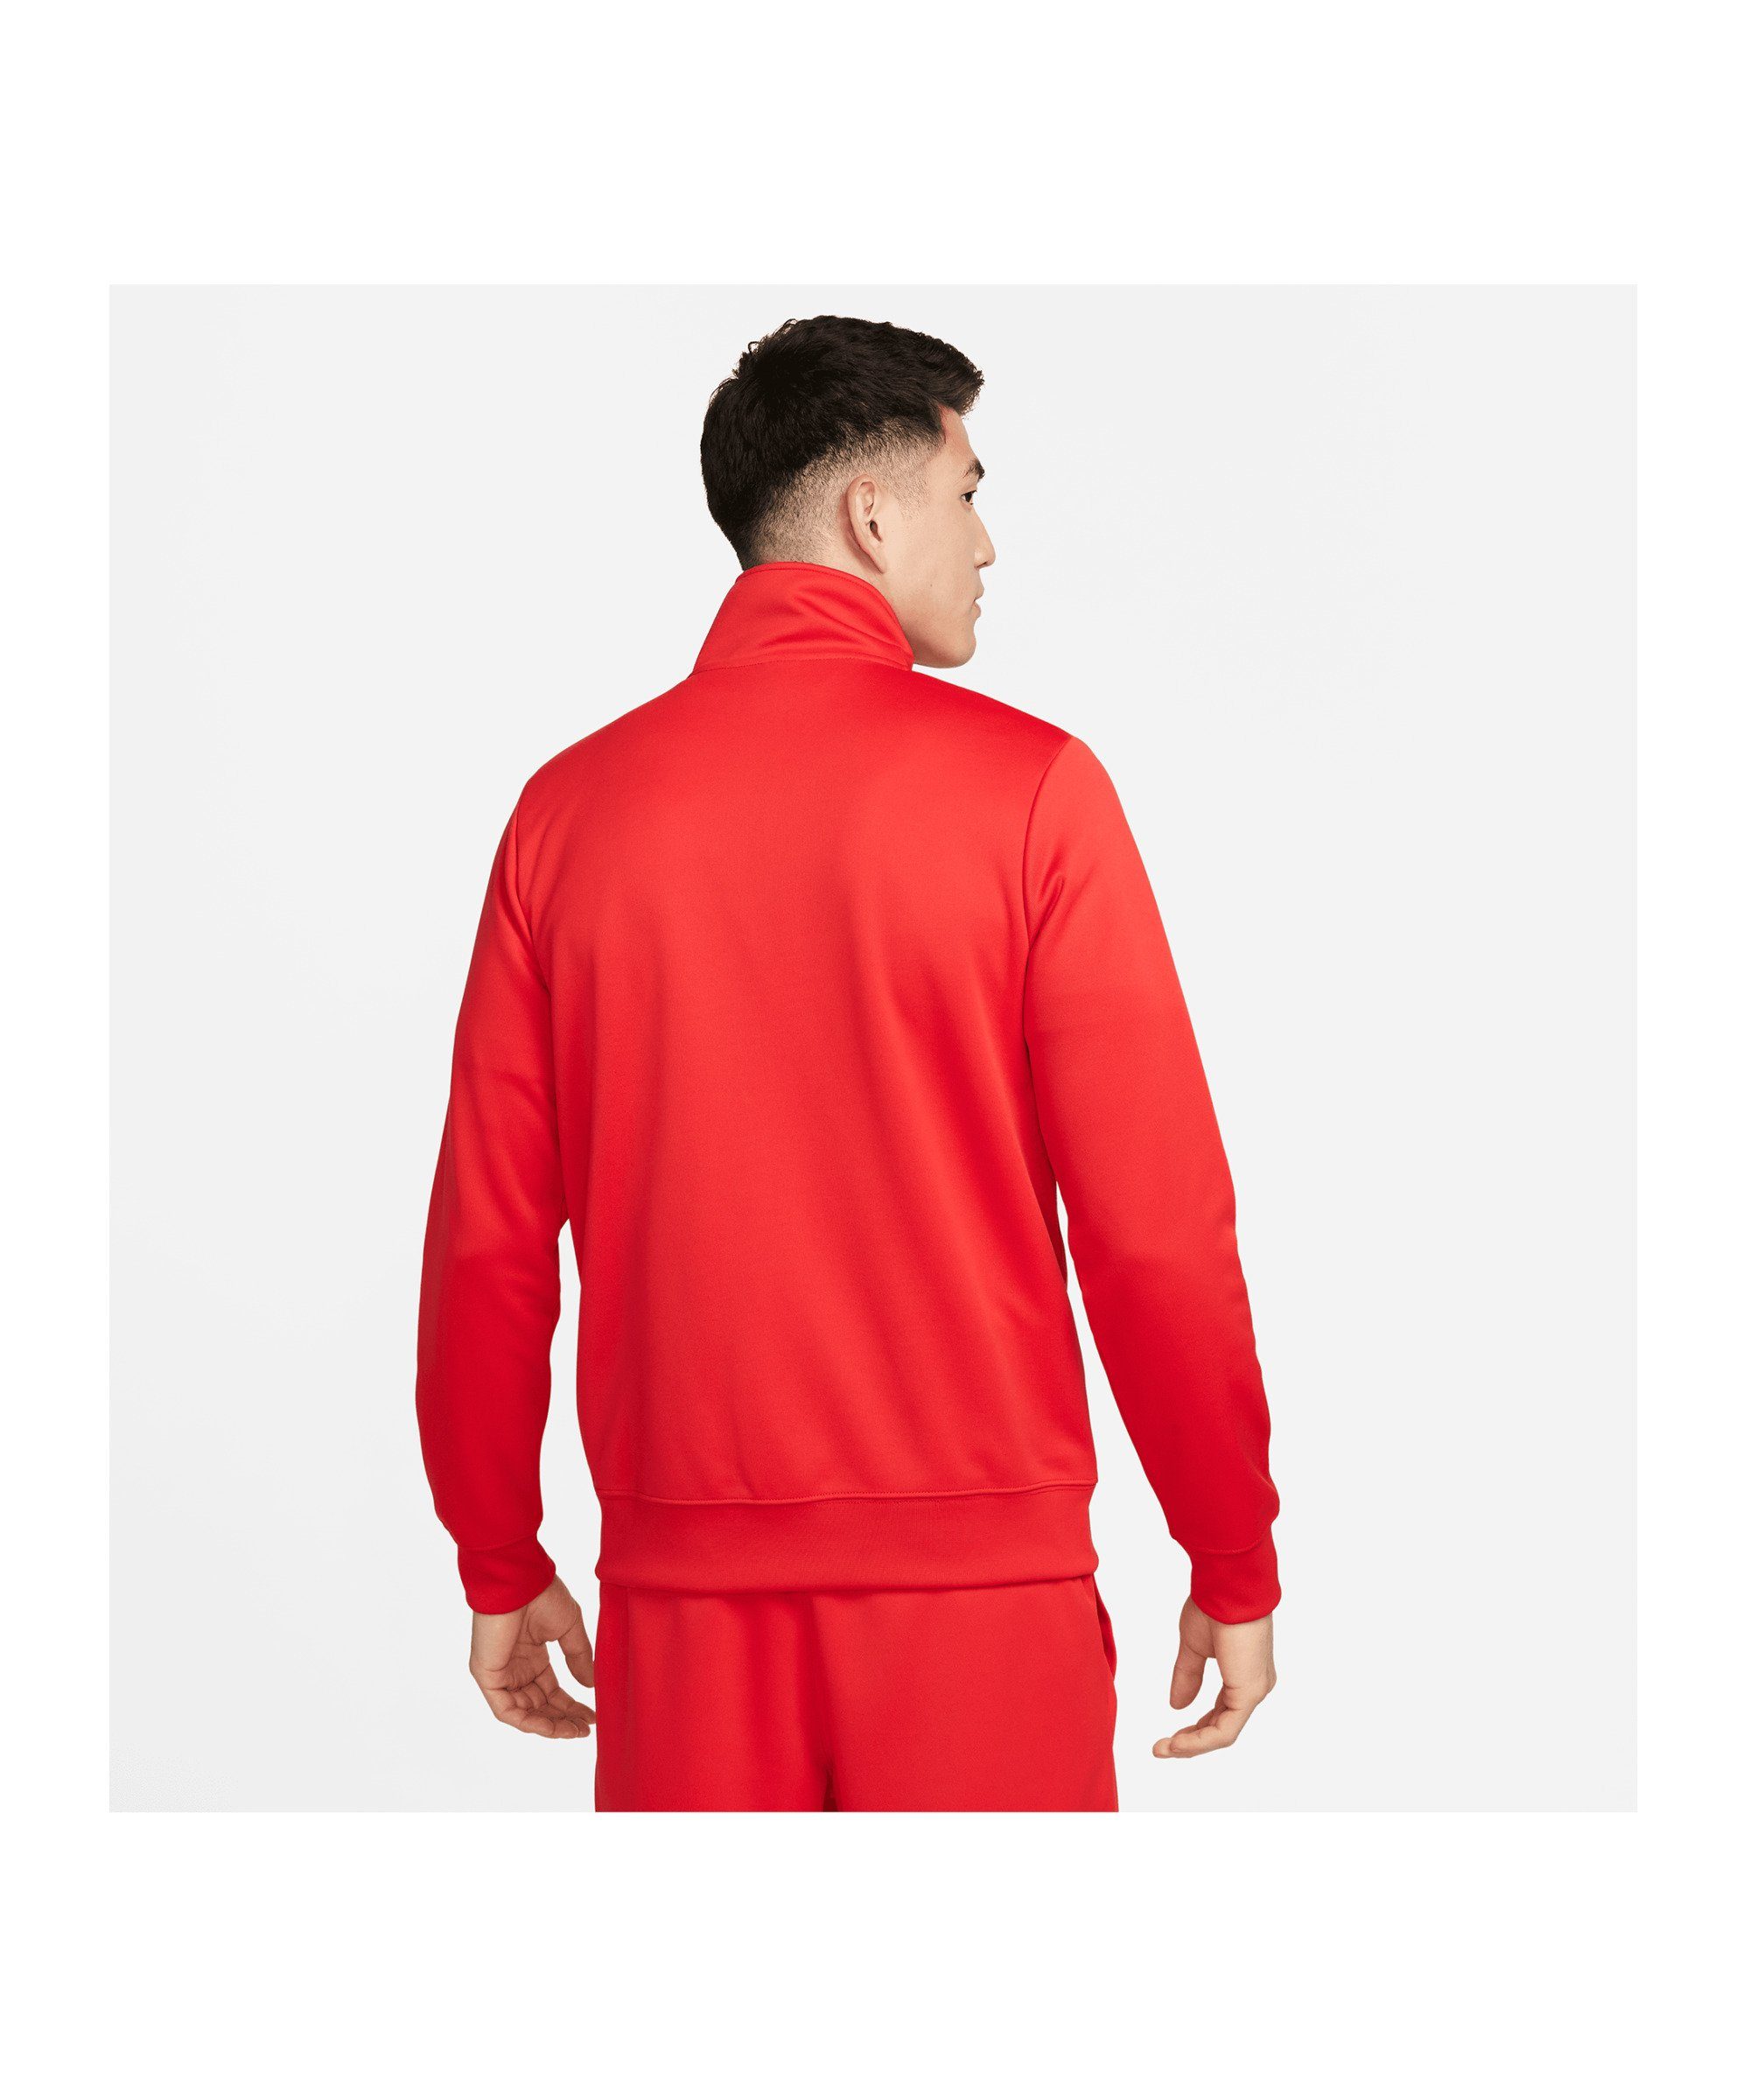 Nike Sportswear Sweatjacke Standart Issue rot Jacke